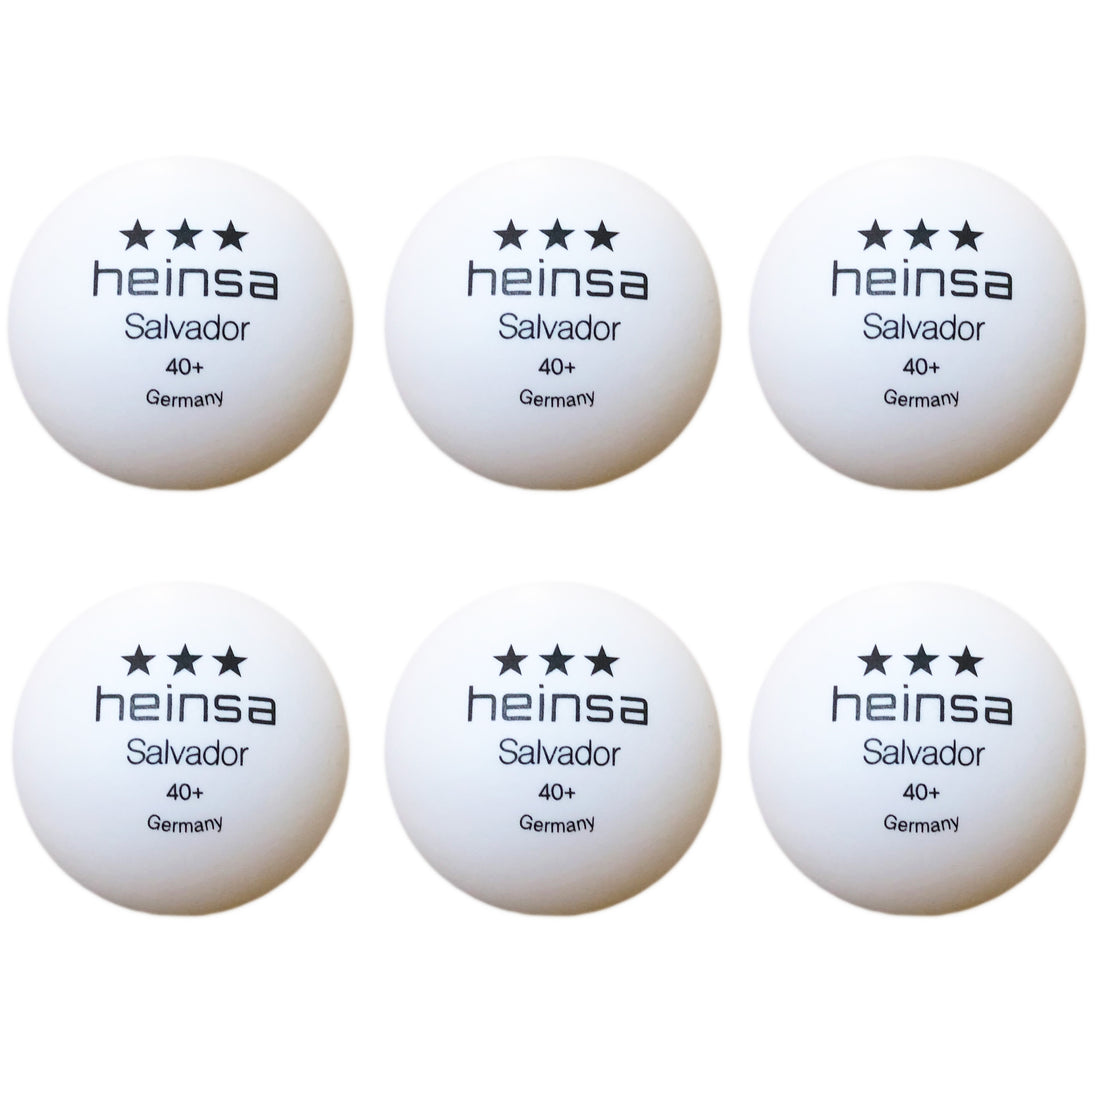 heinsa 3 star table tennis balls 40+ "Salvador"